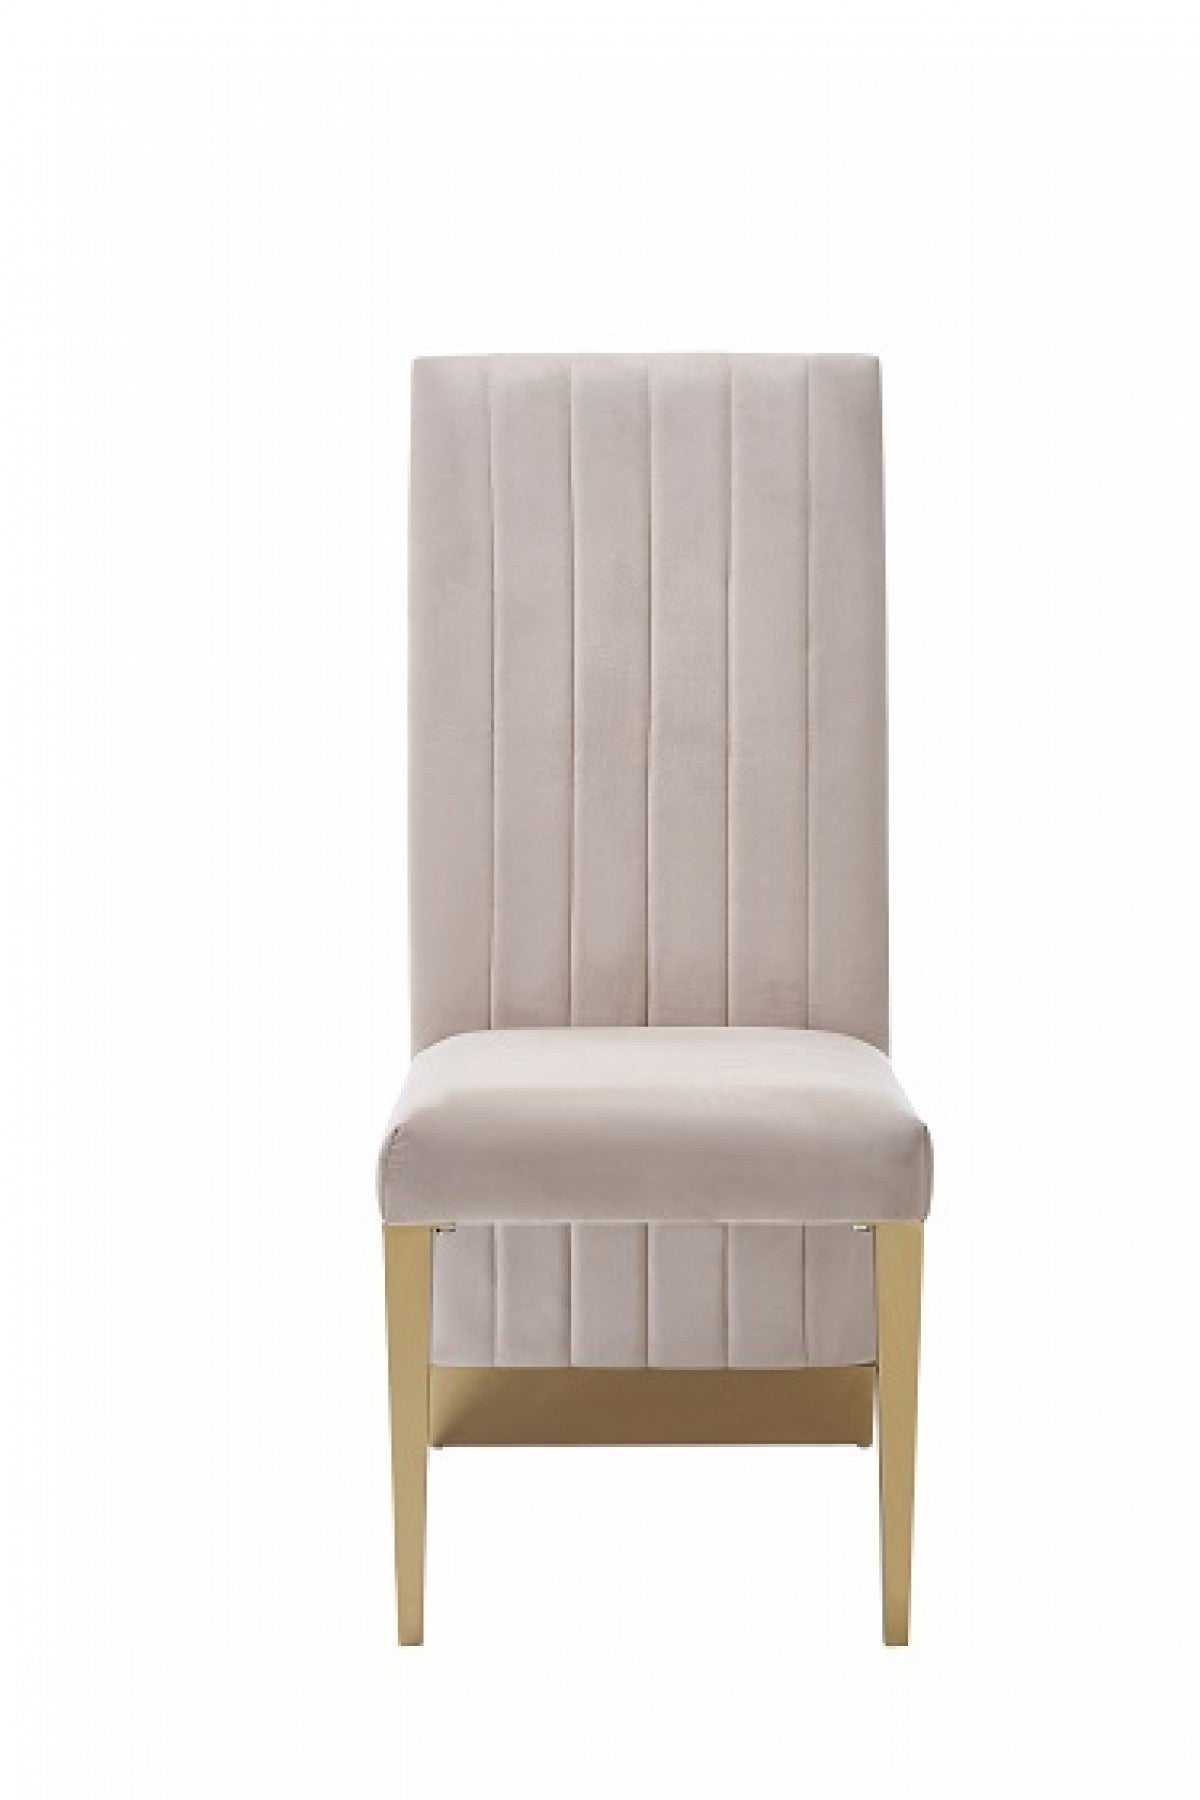 Modrest Keisha - Modern Beige Velvet and Gold Dining Chair Set of 2